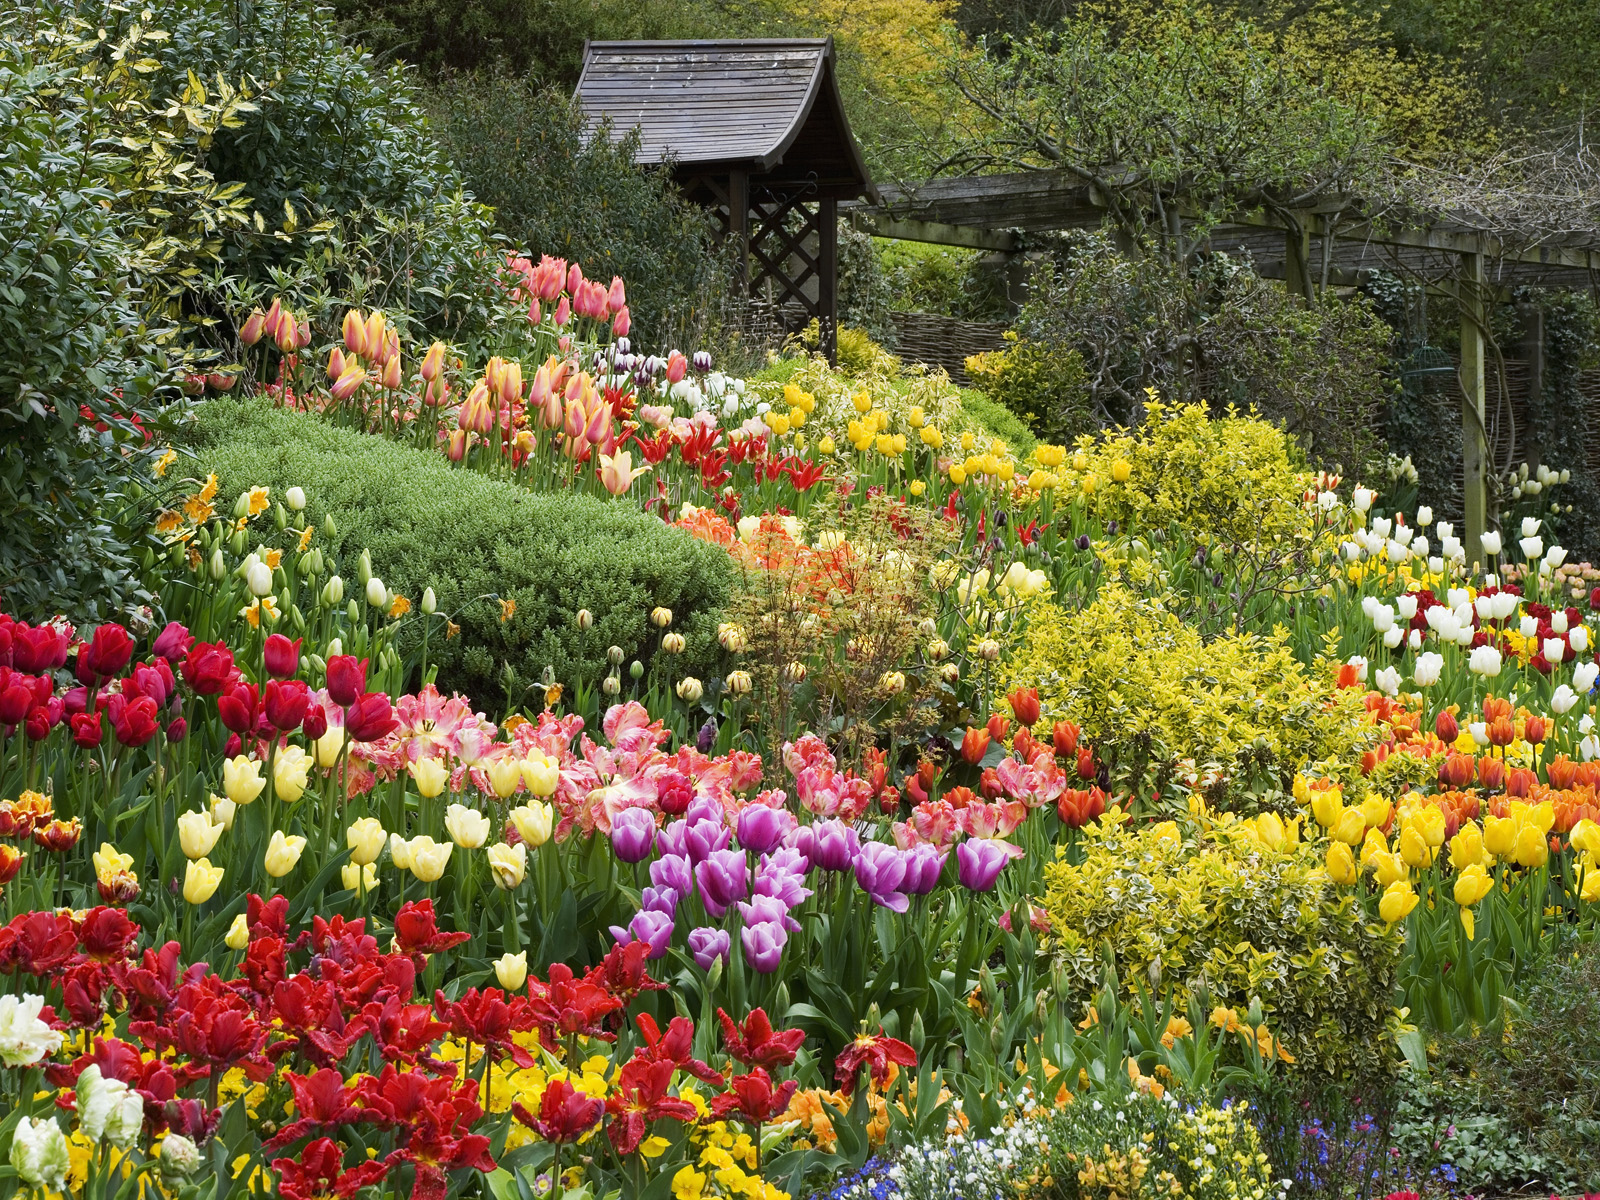 Hãy đến với vườn hoa đẹp tuyệt vời này và trải nghiệm một khoảnh khắc đầy màu sắc, đầy hoa hương. Những hàng cây và bụi hoa xanh tươi, đủ mọi màu sắc của cầu vồng sẽ chắc chắn khiến bạn mê mẩn. Ảnh về vườn hoa này sẽ khiến bạn mong muốn được đến thăm ngay.